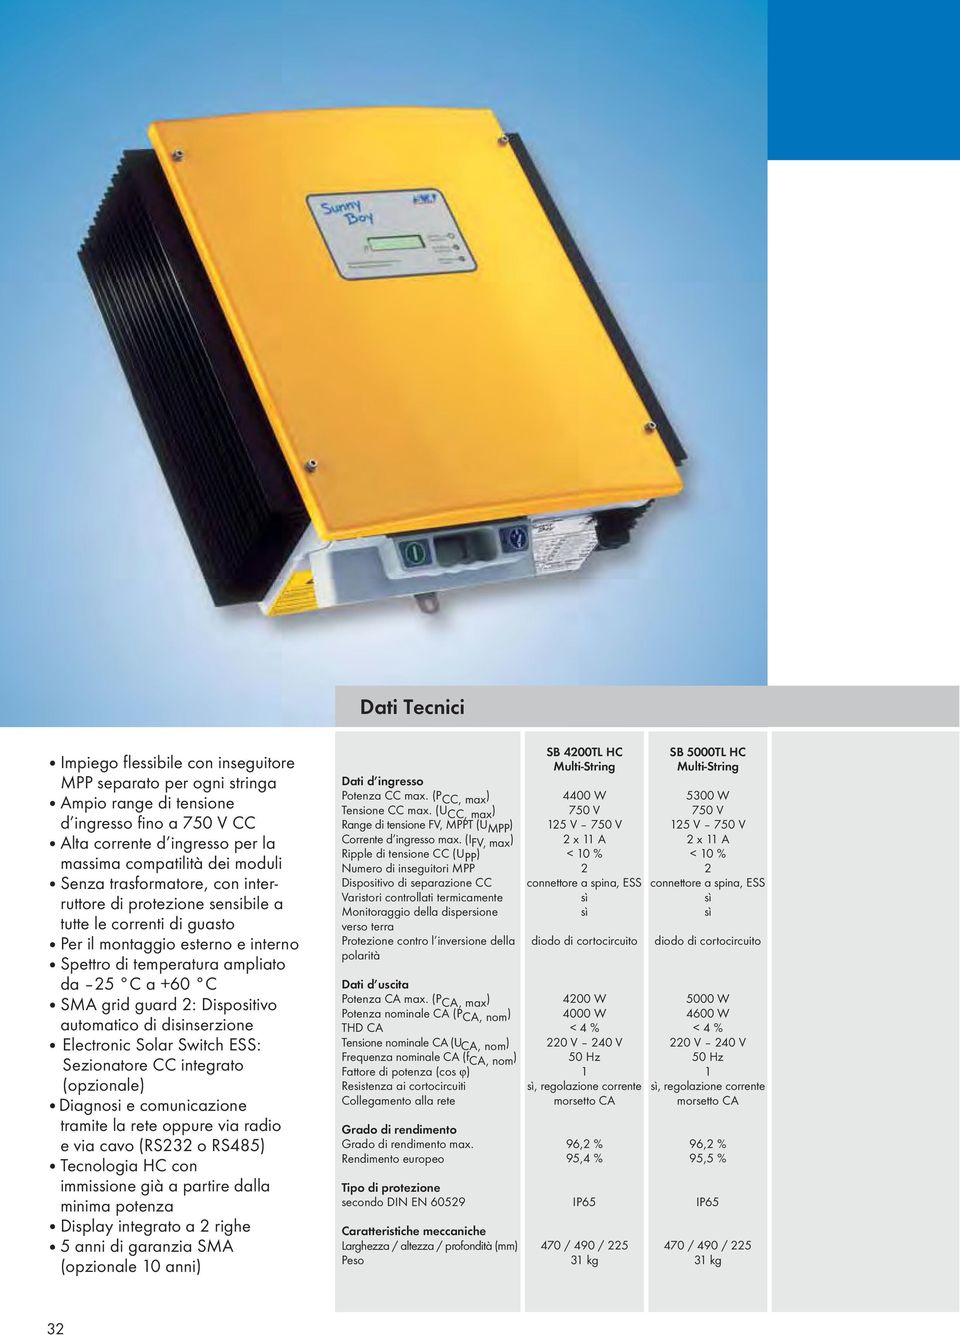 automatico di disinserzione Electronic Solar Switch ESS: Sezionatore CC integrato (opzionale) Diagnosi e comunicazione tramite la rete oppure via radio e via cavo (RS232 o RS485) Tecnologia HC con